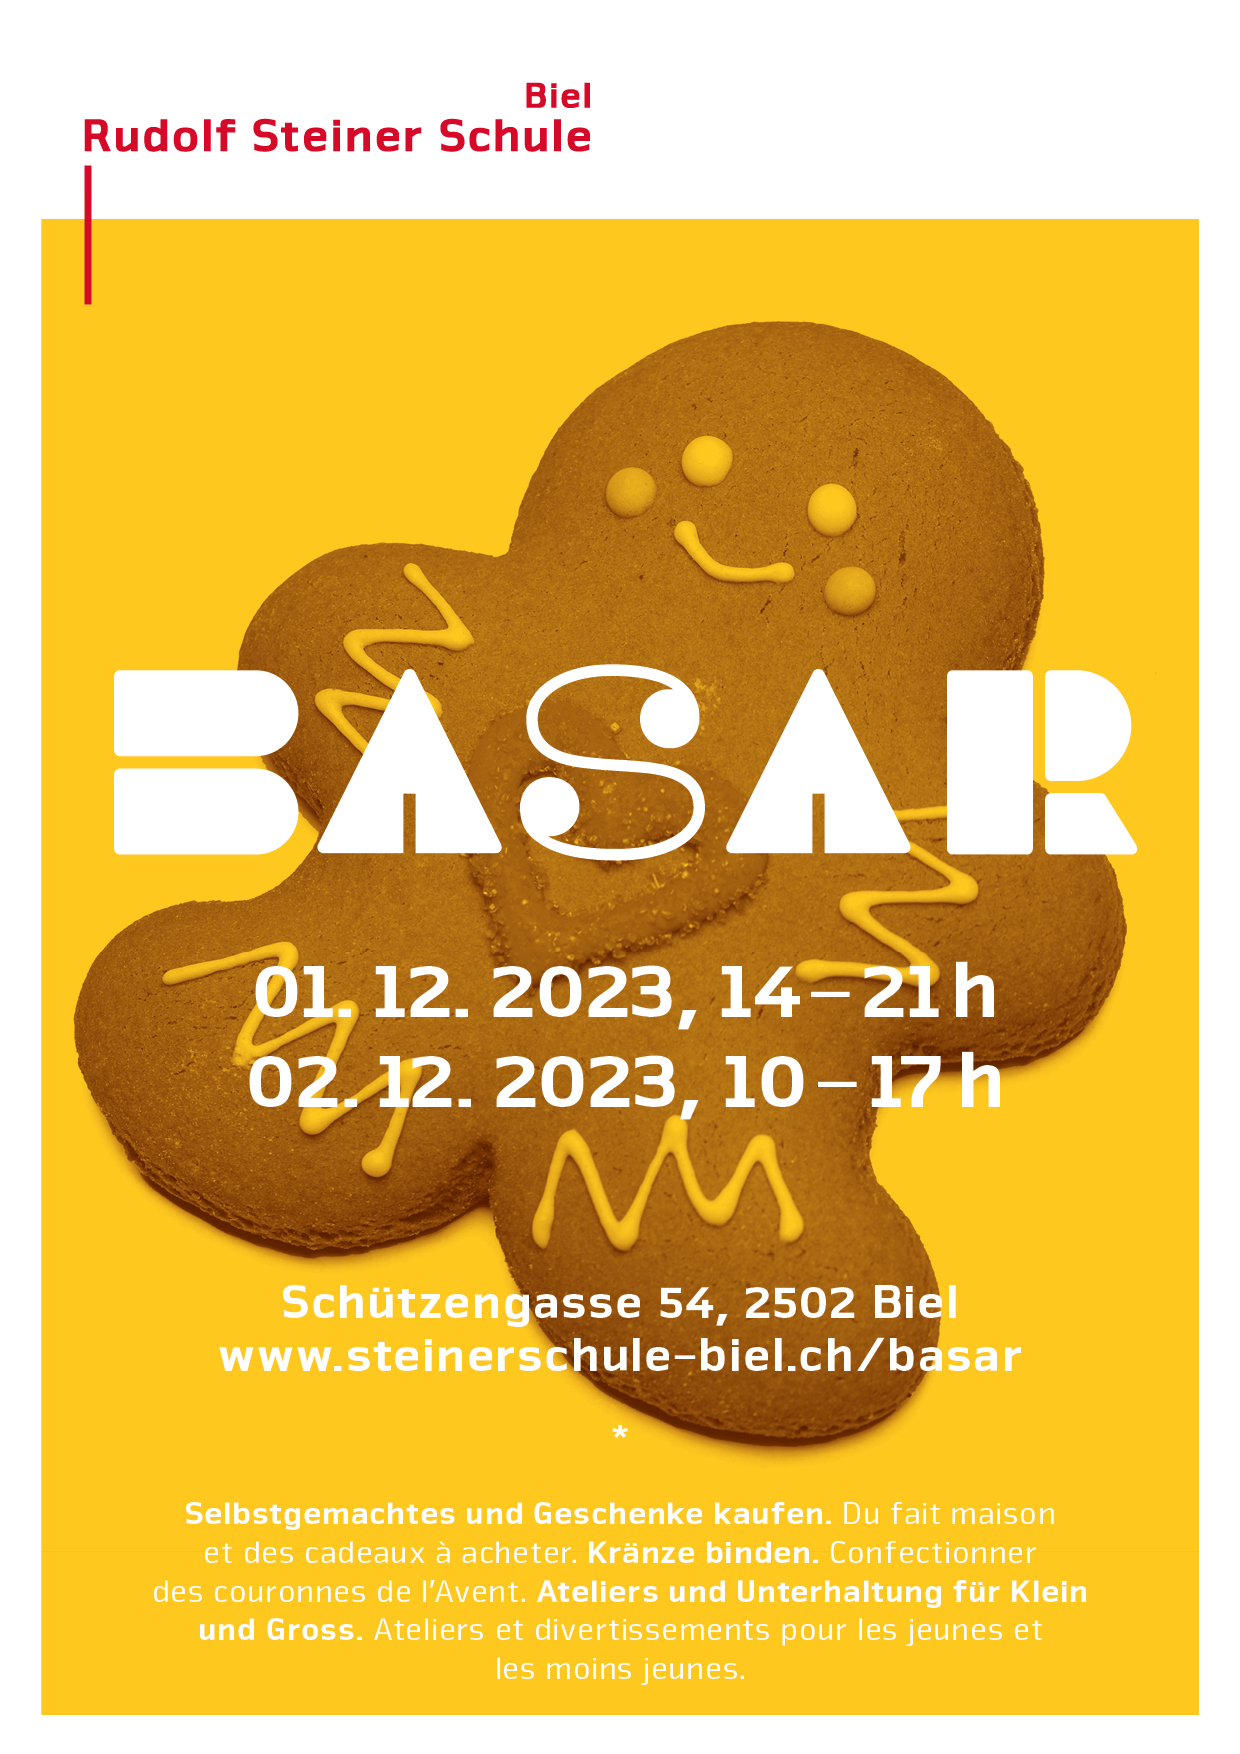 Rudolf Steinerschule Biel - Basar 2022 - Geländeplan